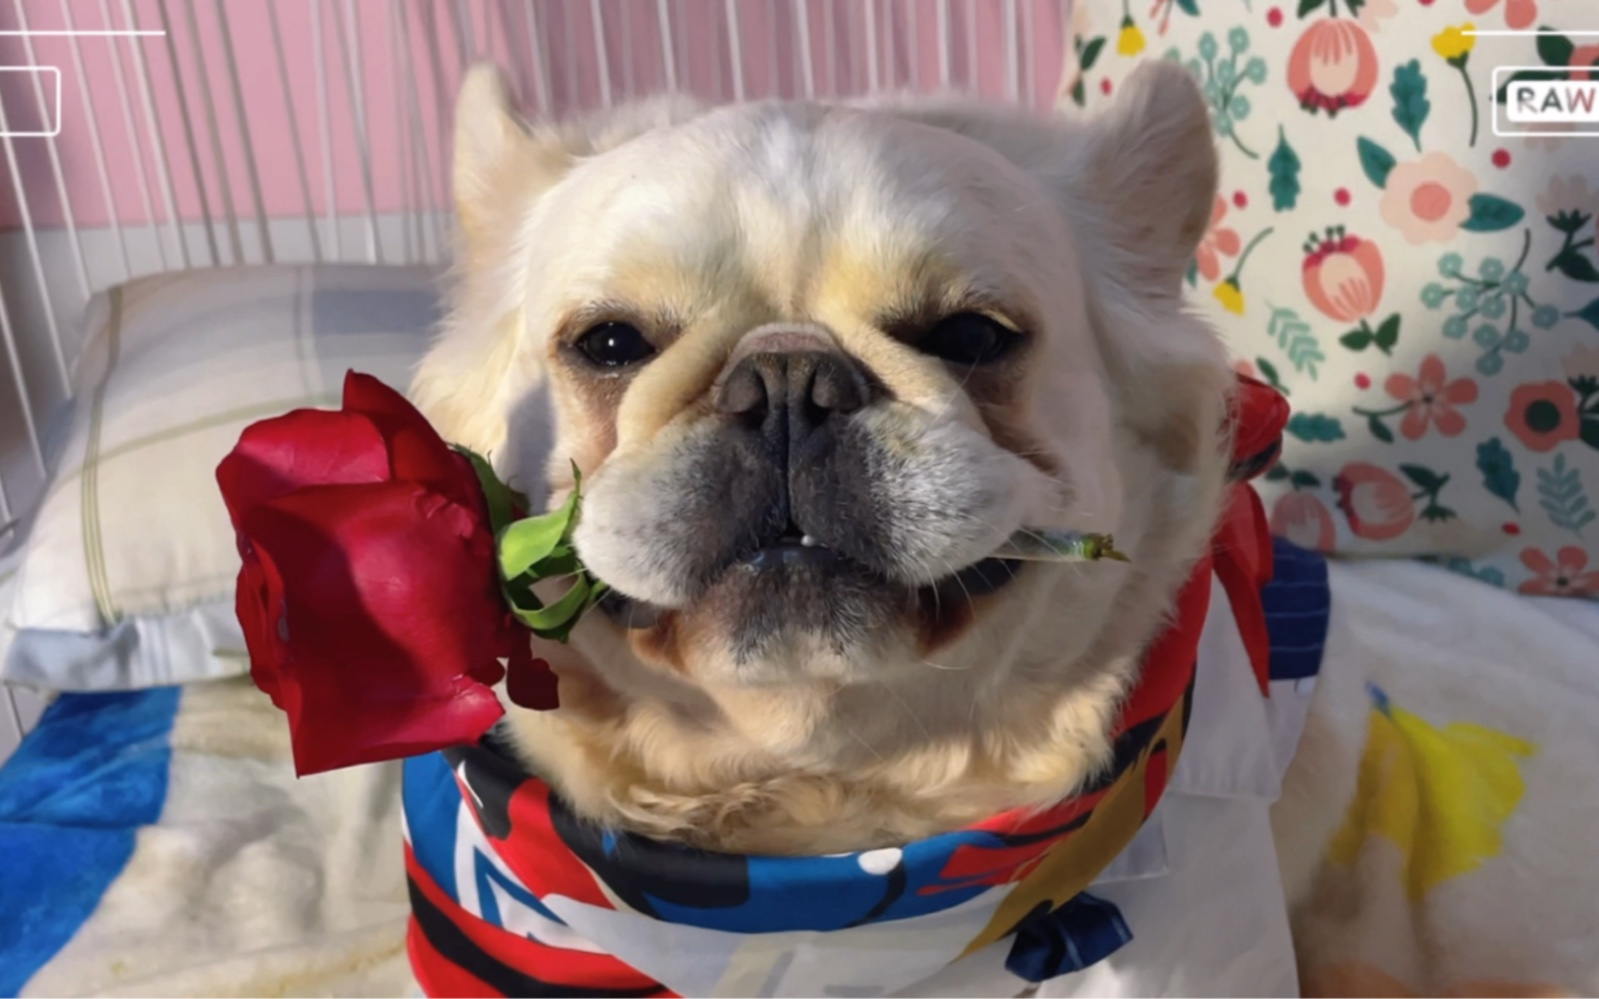 狗叼着玫瑰花的表情图片